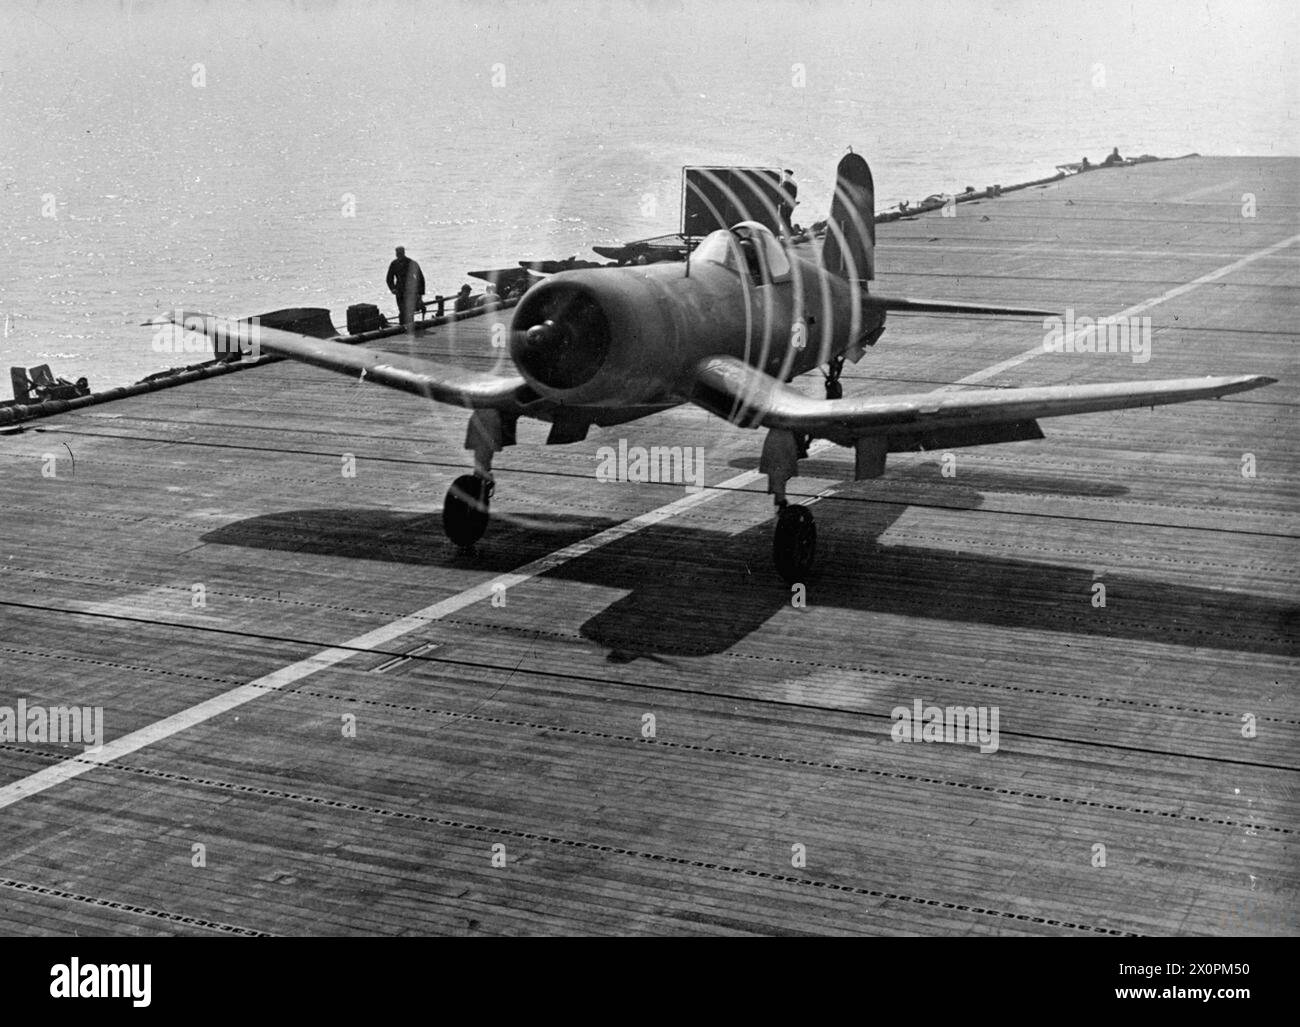 ENTRAÎNEMENT À L'ATTERRISSAGE SUR LE PONT DU HMS RAJAH. 1944. - Des anneaux de perturbation aérienne sont clairement visibles dans ce plan de 1/1000 secondes d'un chance-Vought Corsair décollant lors du DLT, le 30 juillet 1944 Banque D'Images